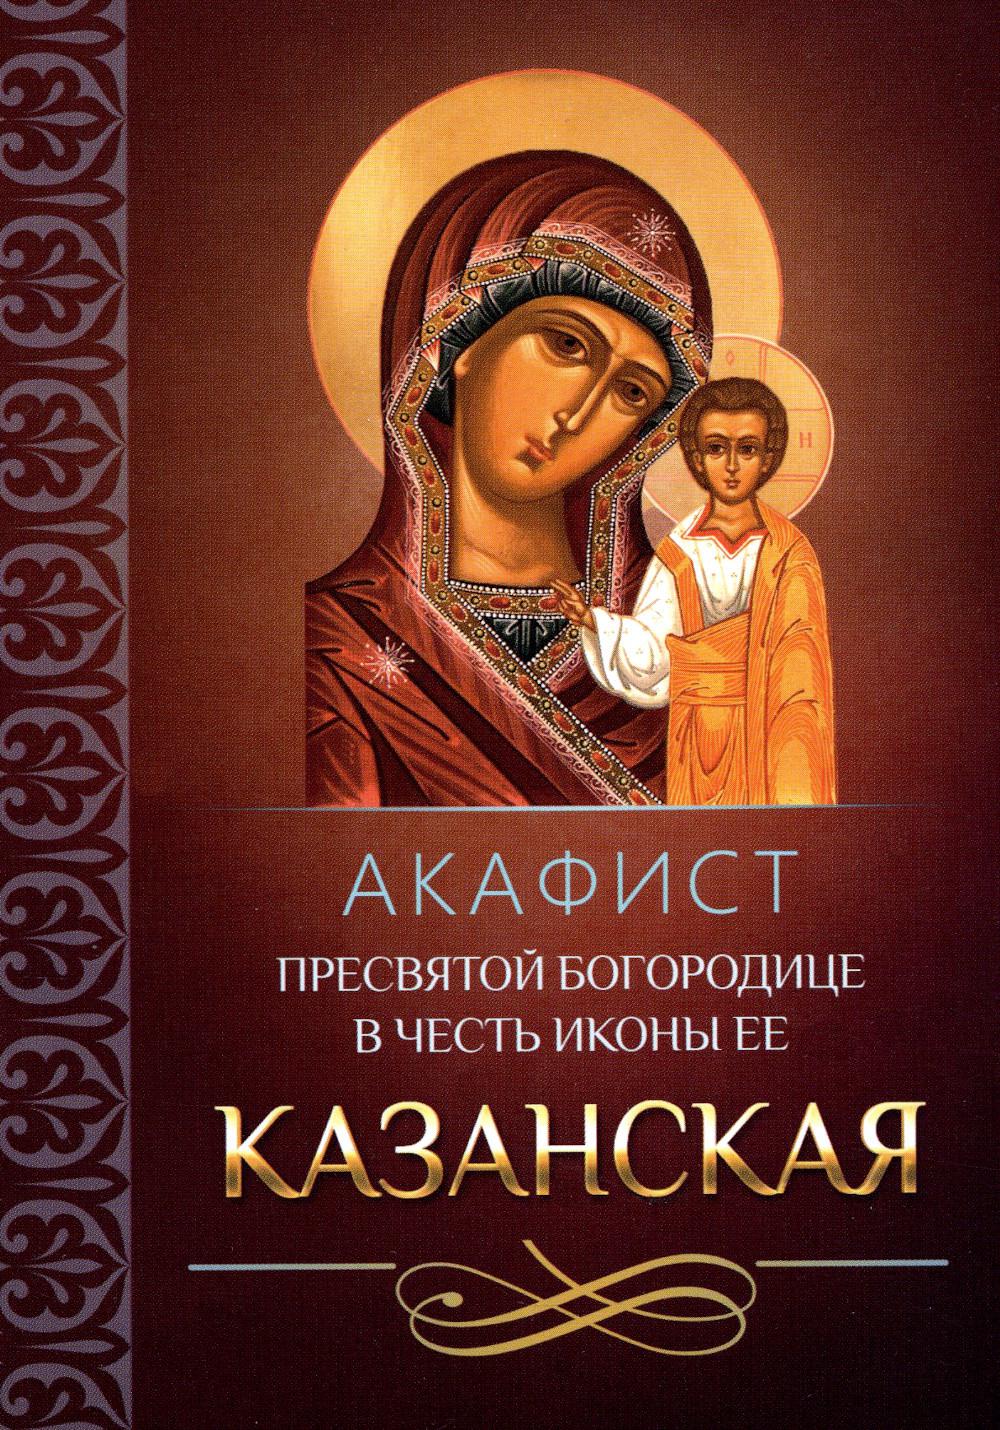 Акафист Пресвятой Богородице в честь иконы Ее Казанская (Благовест)